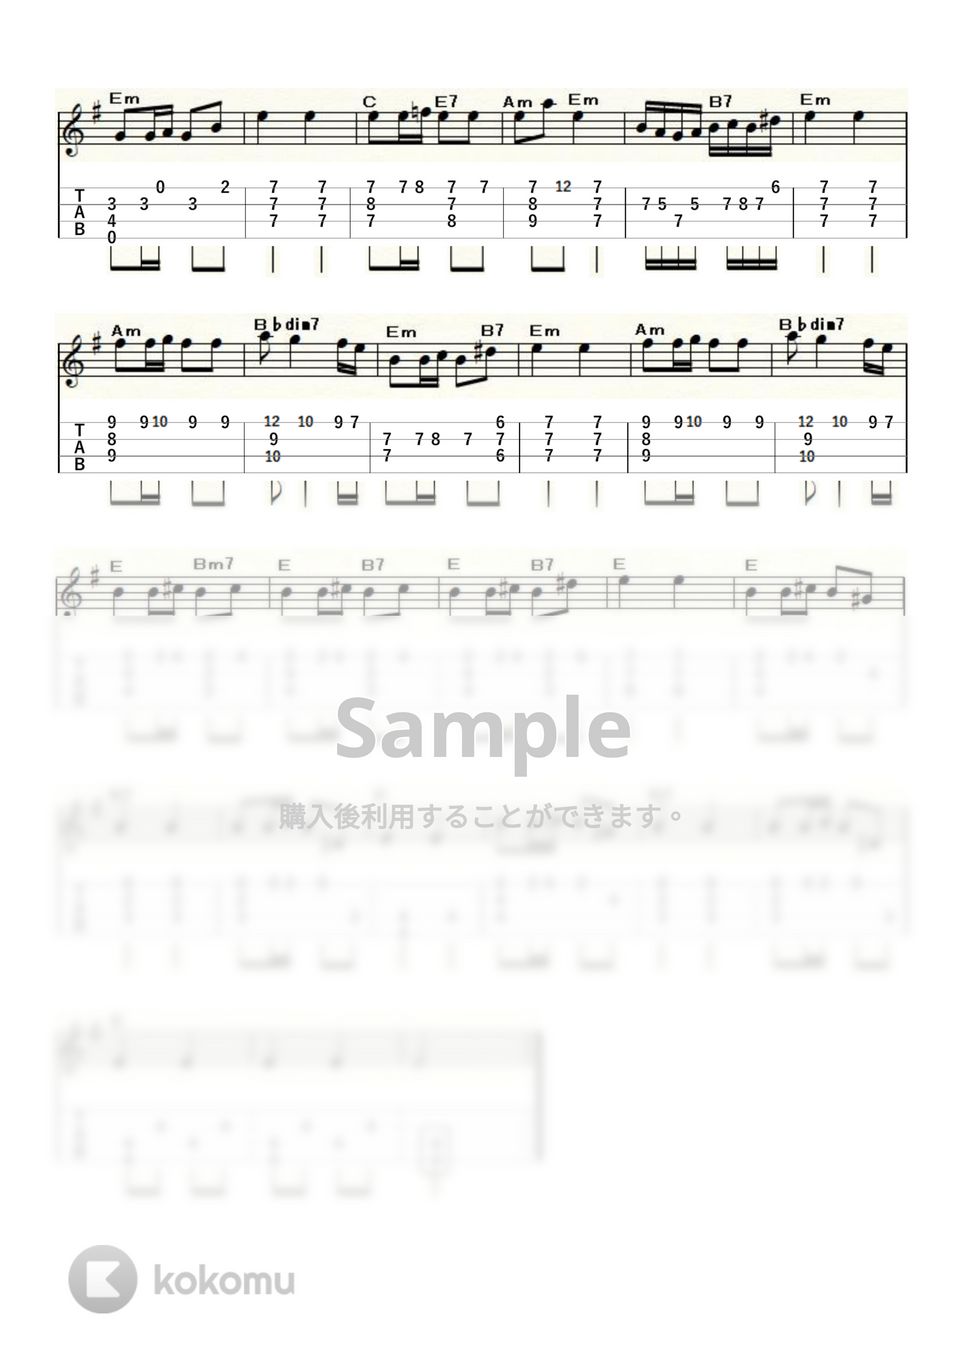 シューベルト - 「楽興の時」第3番 by ukulelepapa